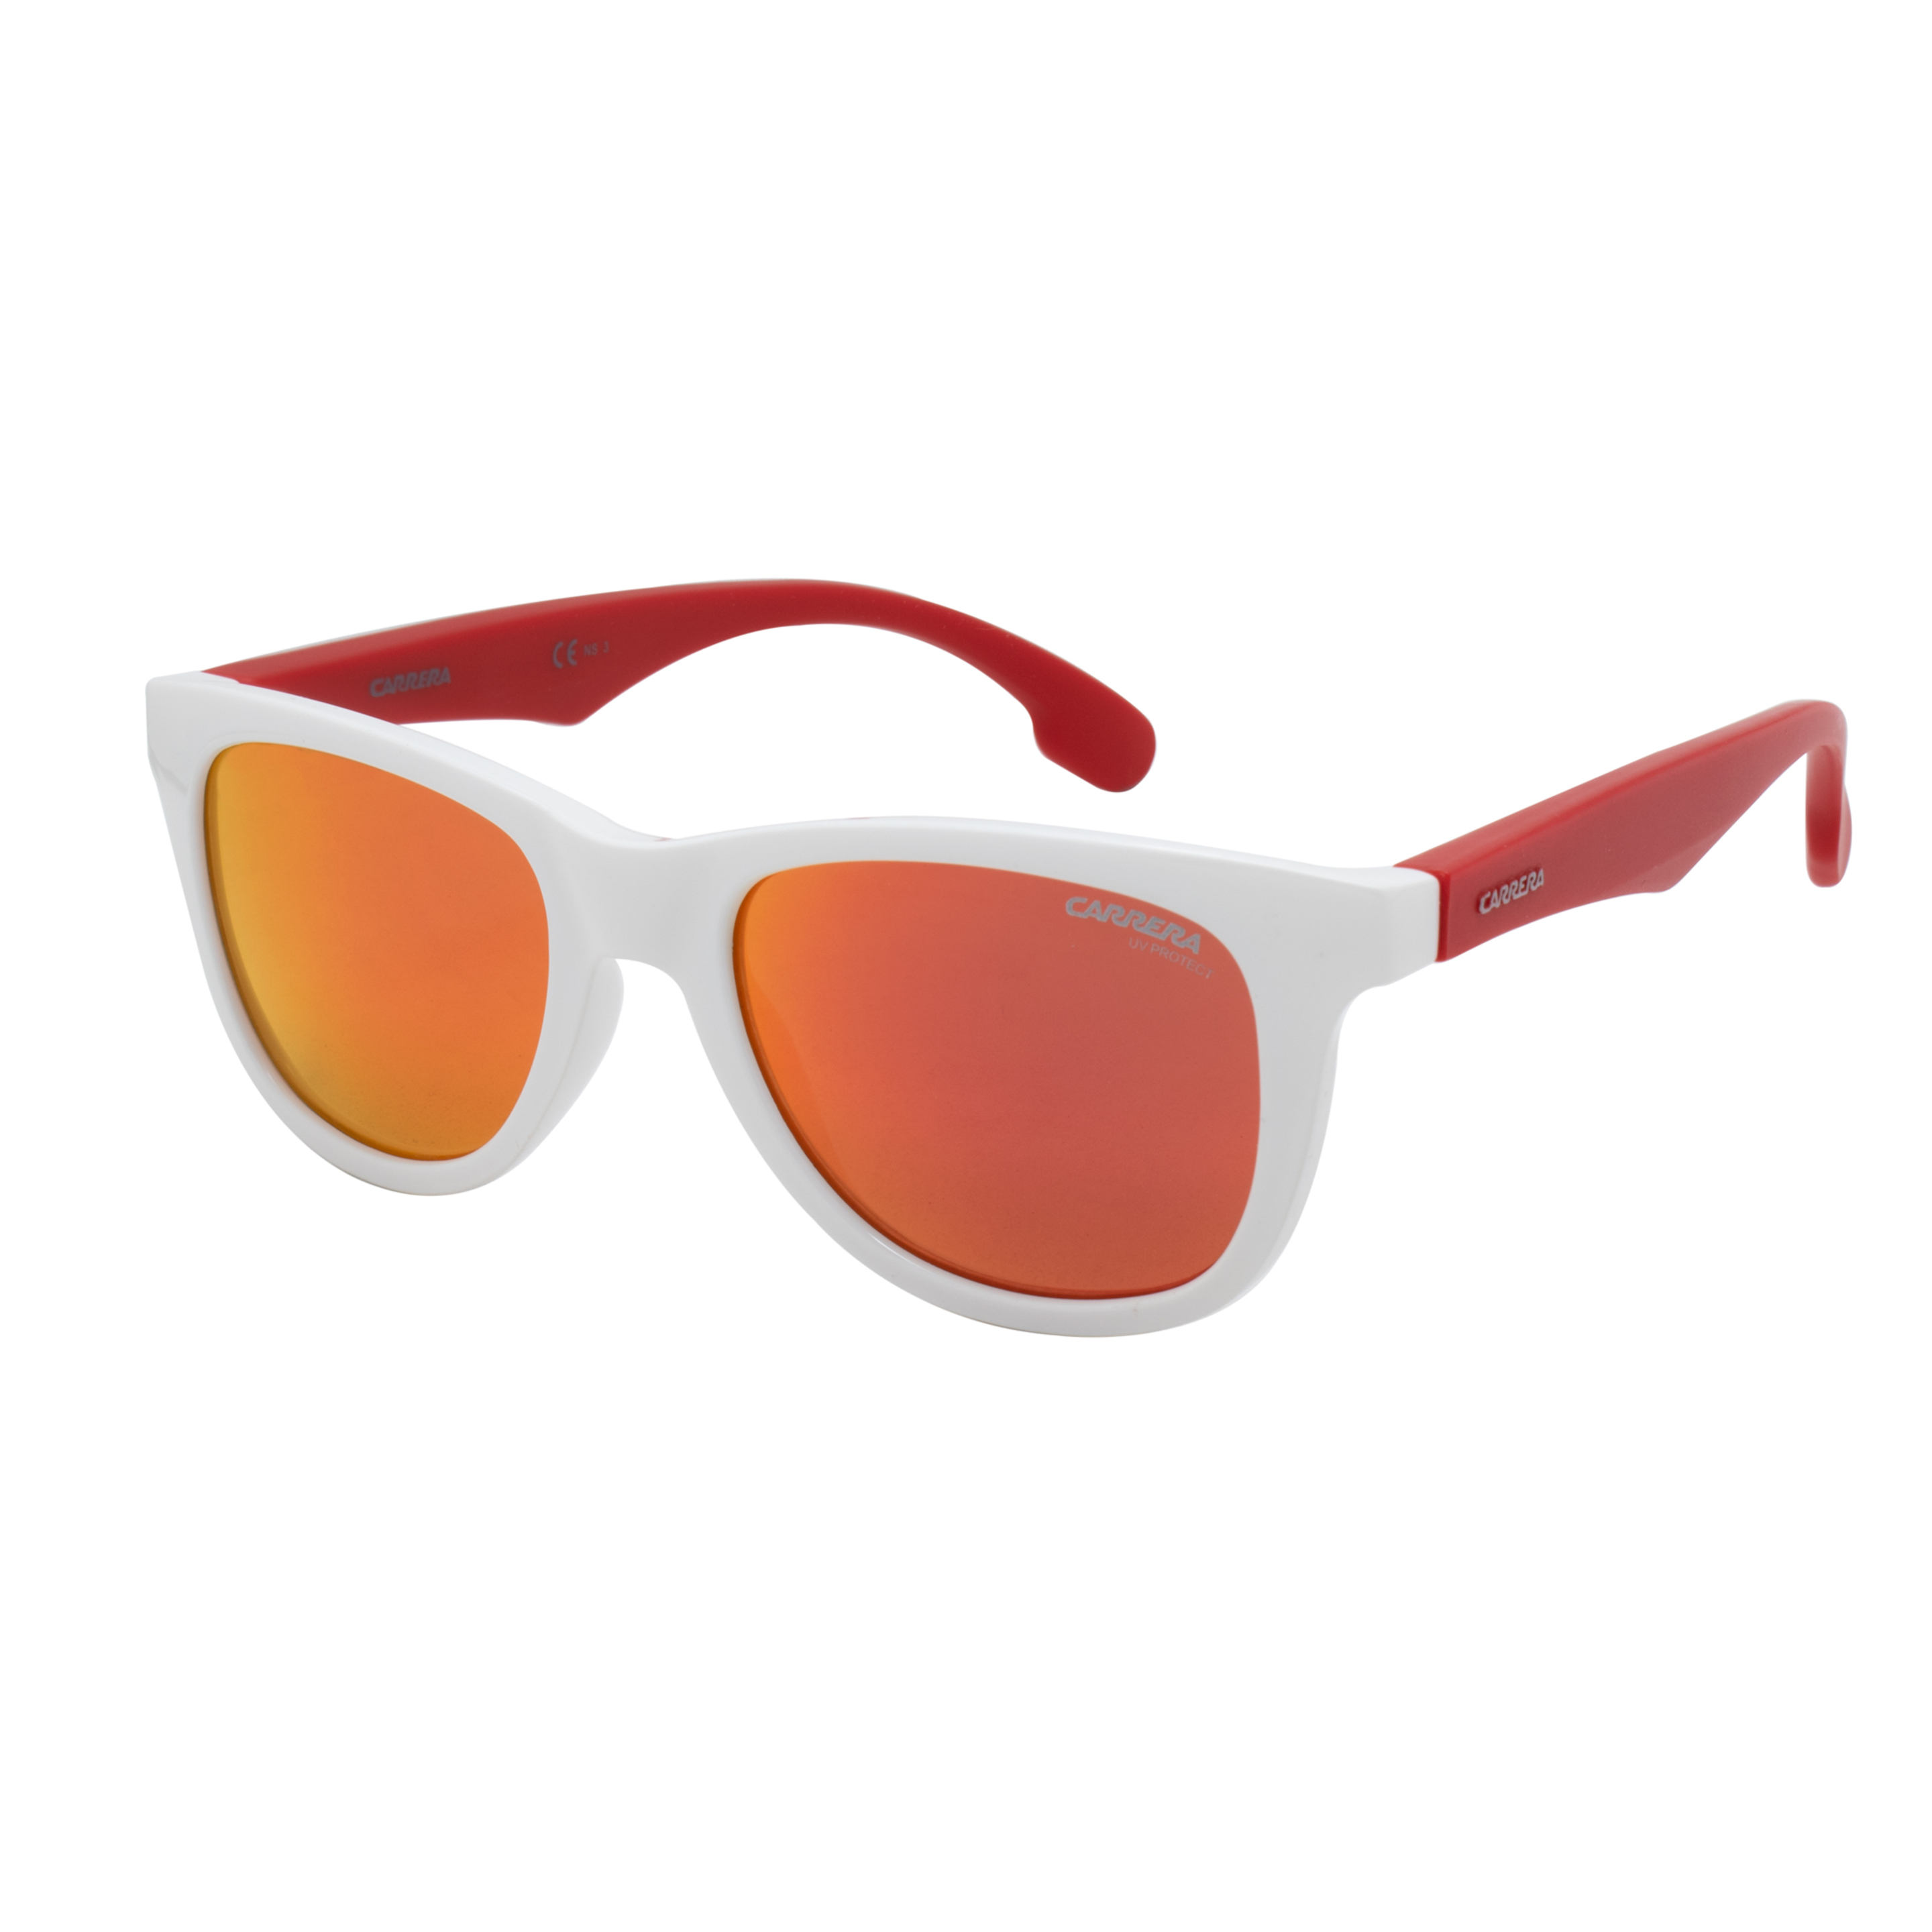 Gafas De Sol Carrera 20-5sk46uz - blanco - 